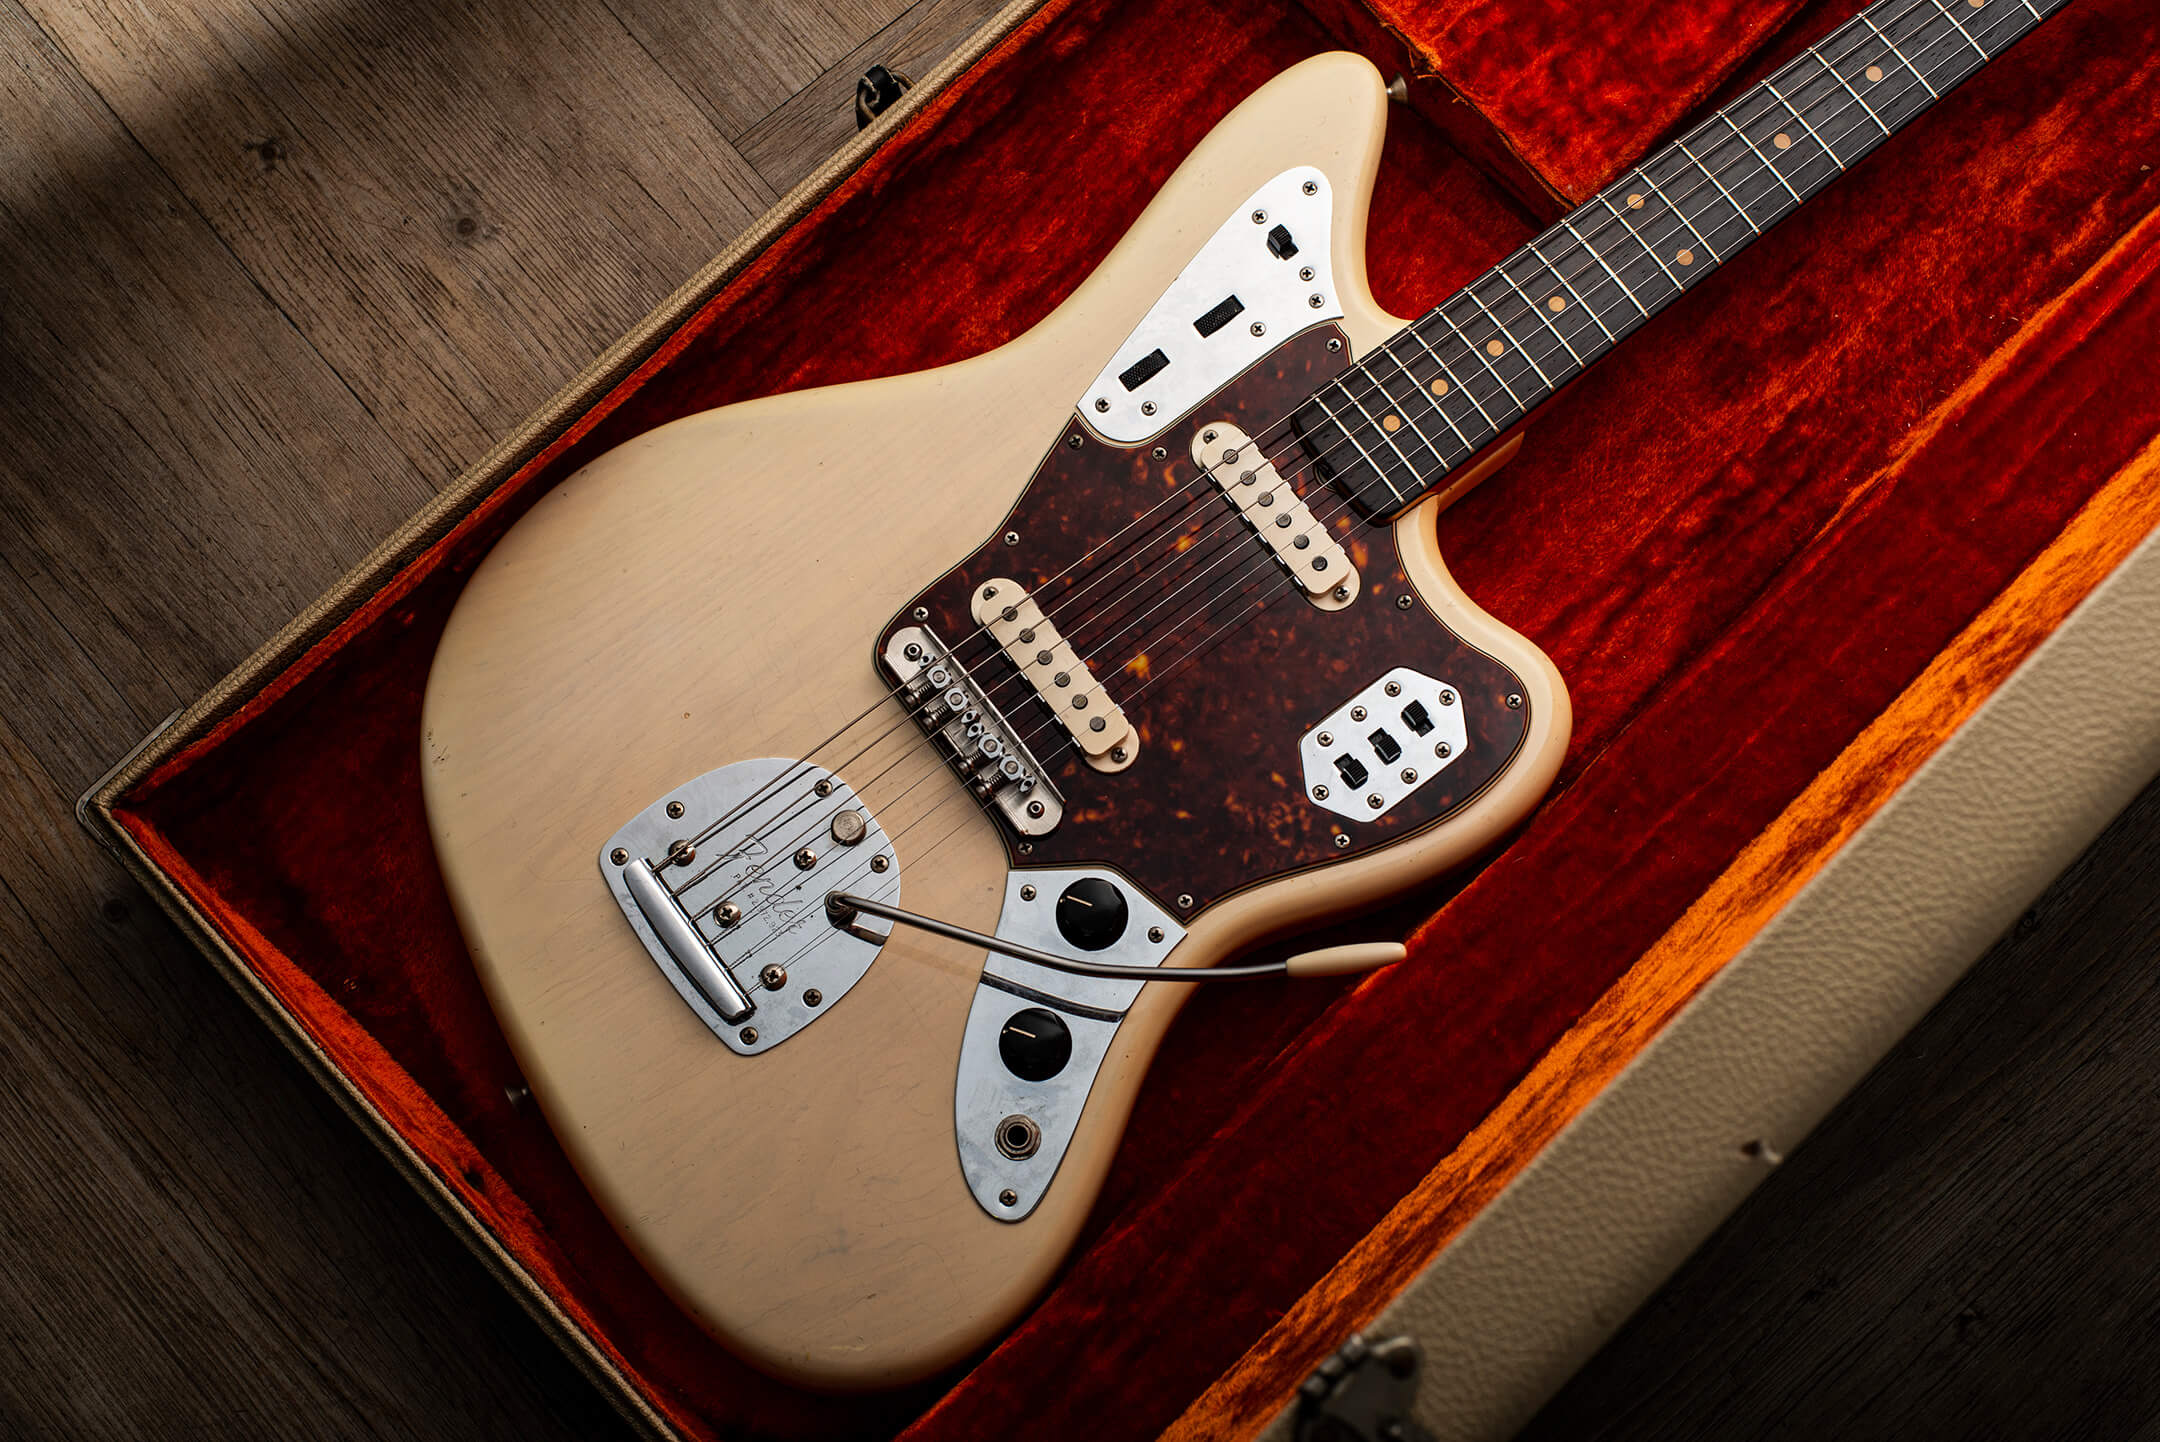 Jamie Oborne's 1963 Fender Jaguar